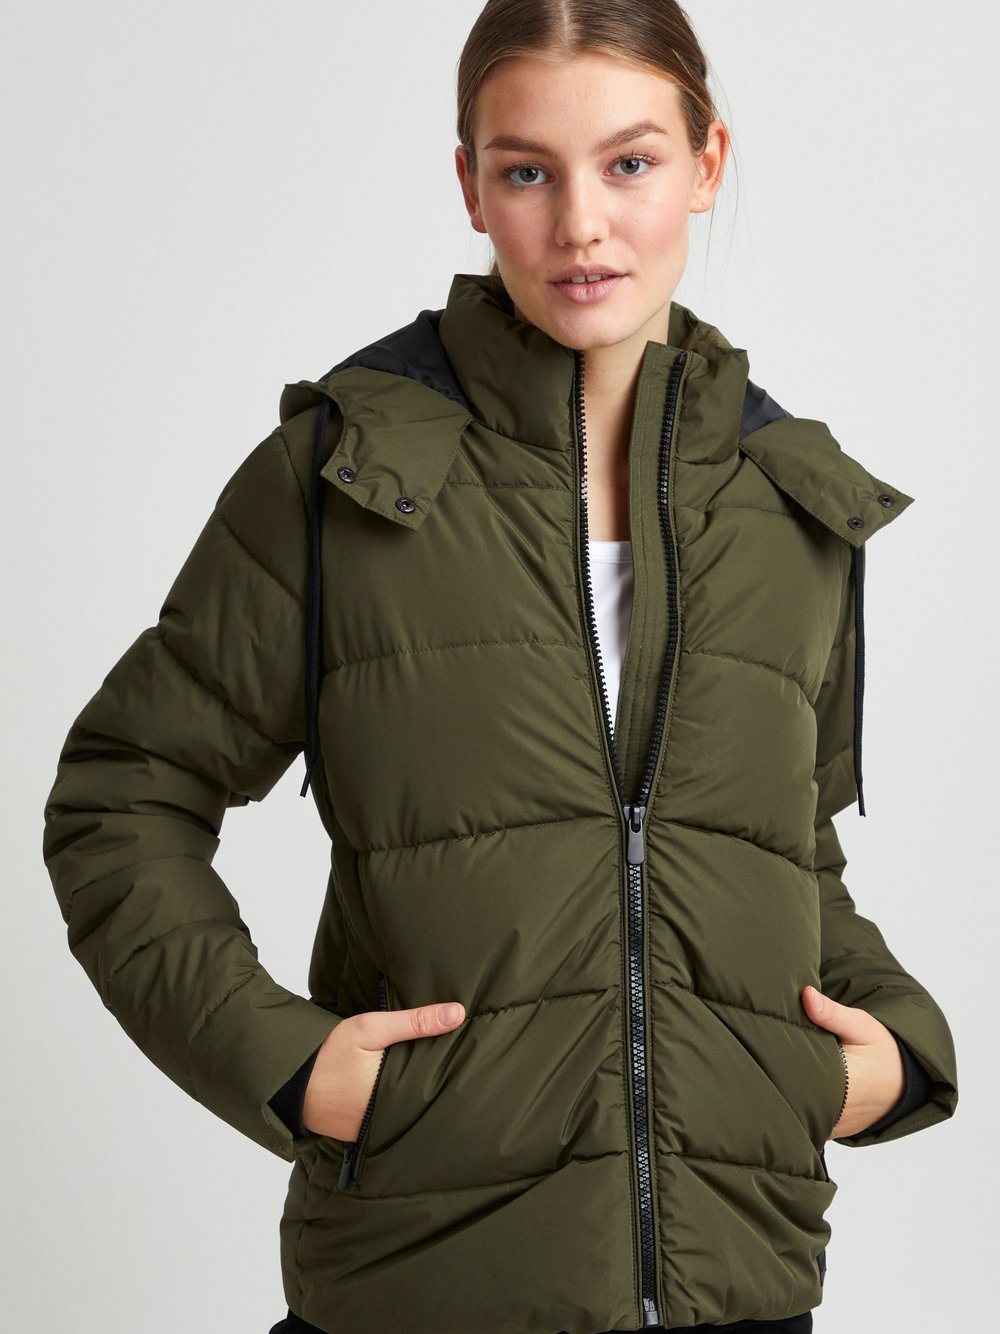 Preisvergleich für OXMO Winterjacke Damen grün, XL, aus Polyester, GTIN:  5715170000716 | Ladendirekt